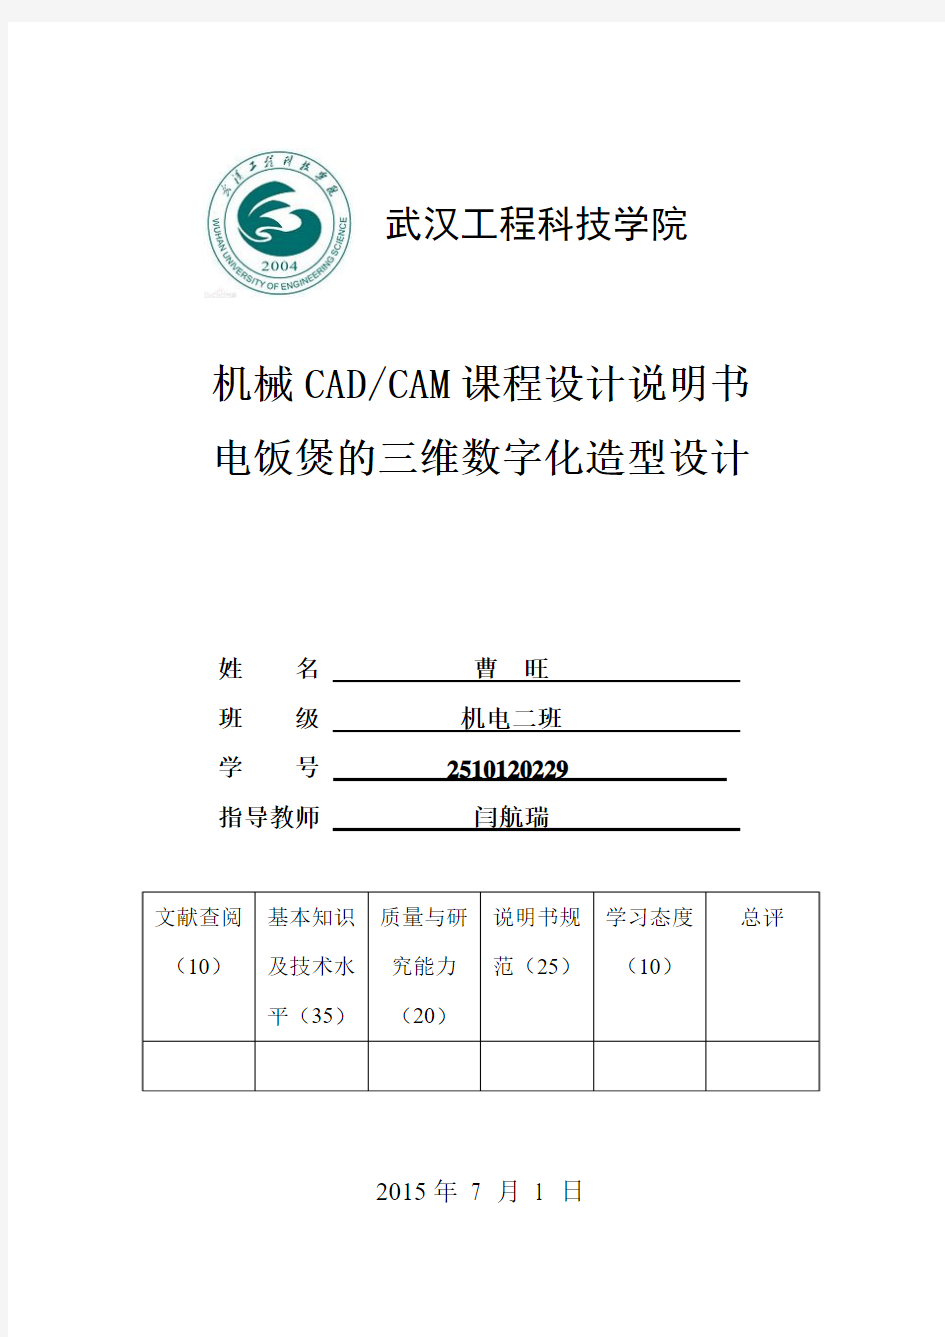 《机械CAD&CAM(ProE)课程设计说明书》